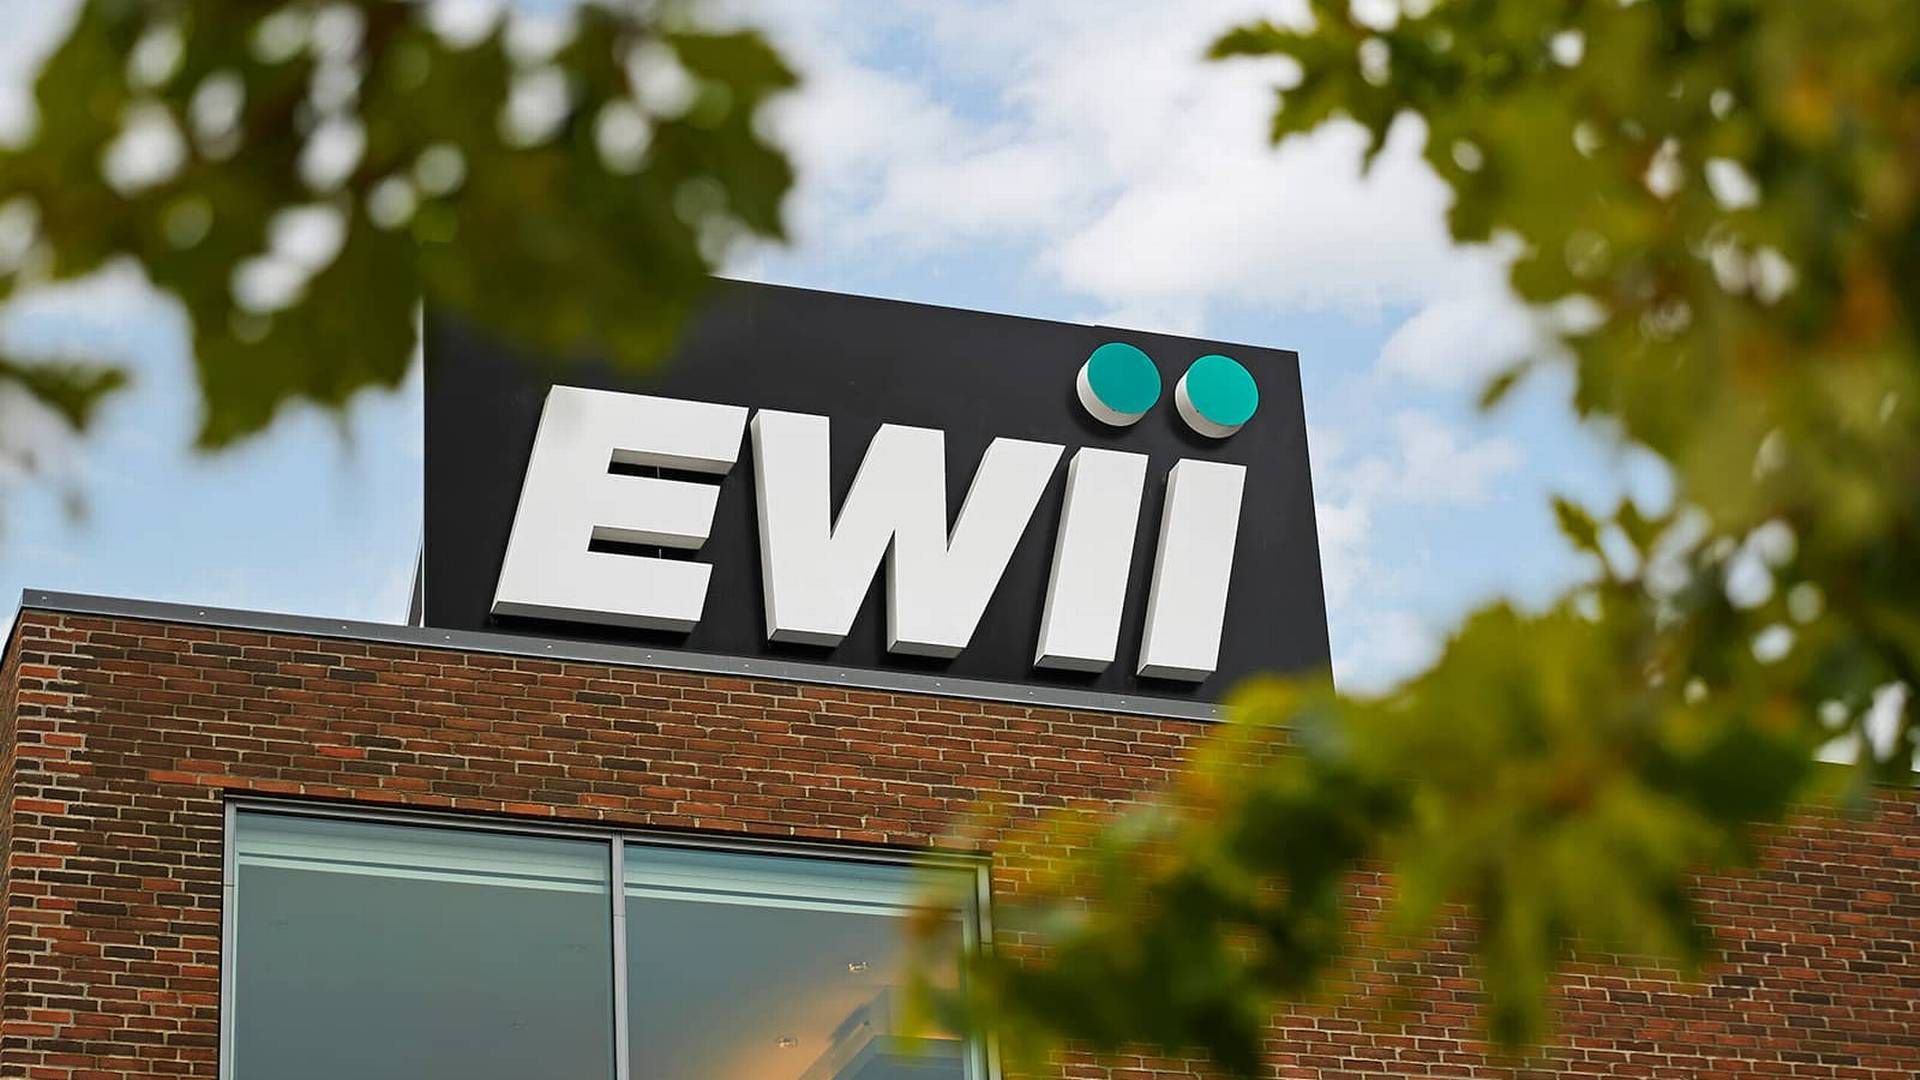 Energikoncernen Ewii er på vej med en lynladestation i Københavns Lufthavn. Her har selskabet tidligere indgået en stor ladestanderkontrakt. | Foto: Ewii Pr